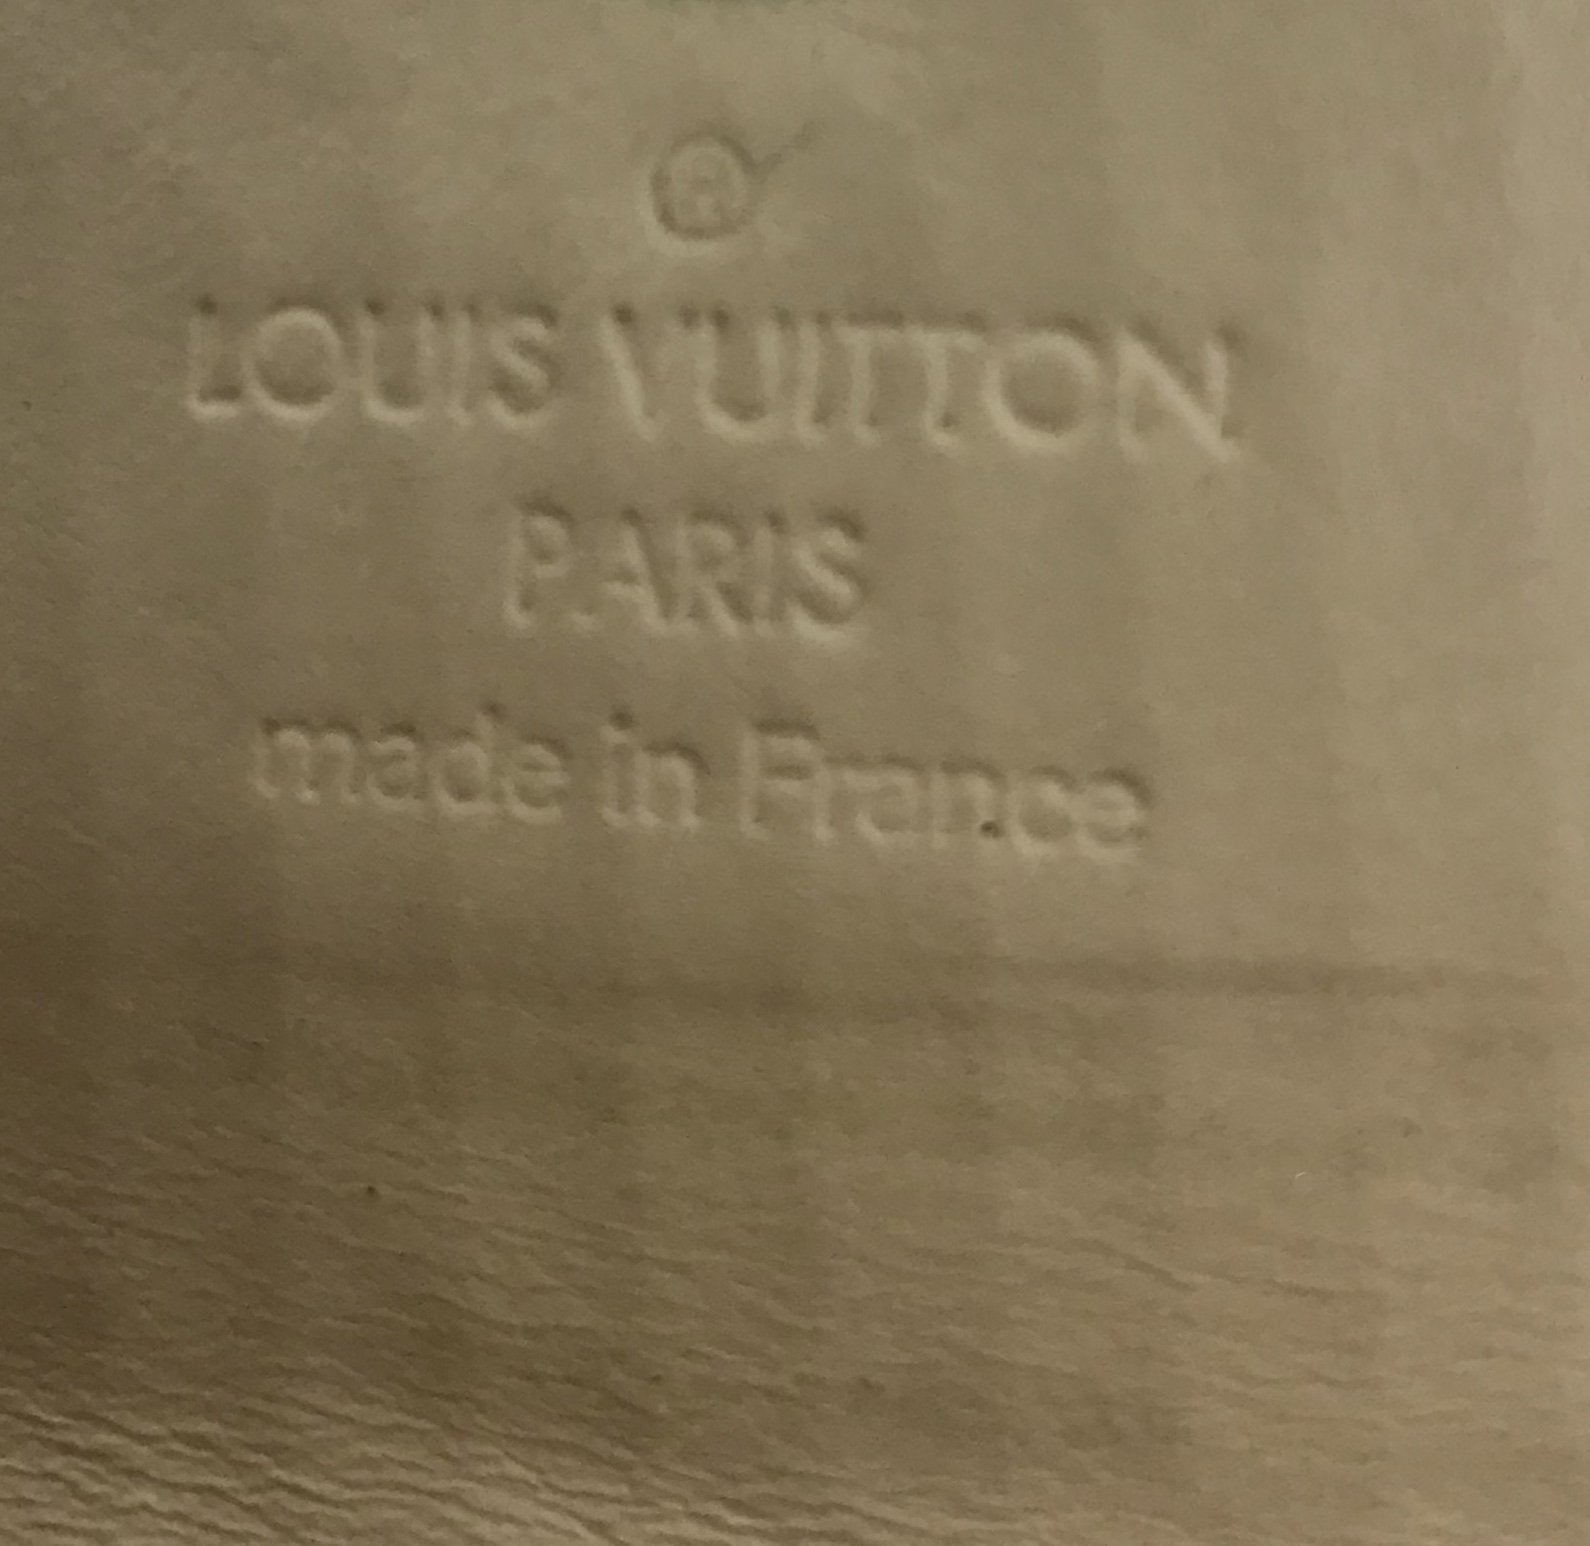 Louis Vuitton Multicolor Noir Bifold Compact Wallet – Just Gorgeous Studio